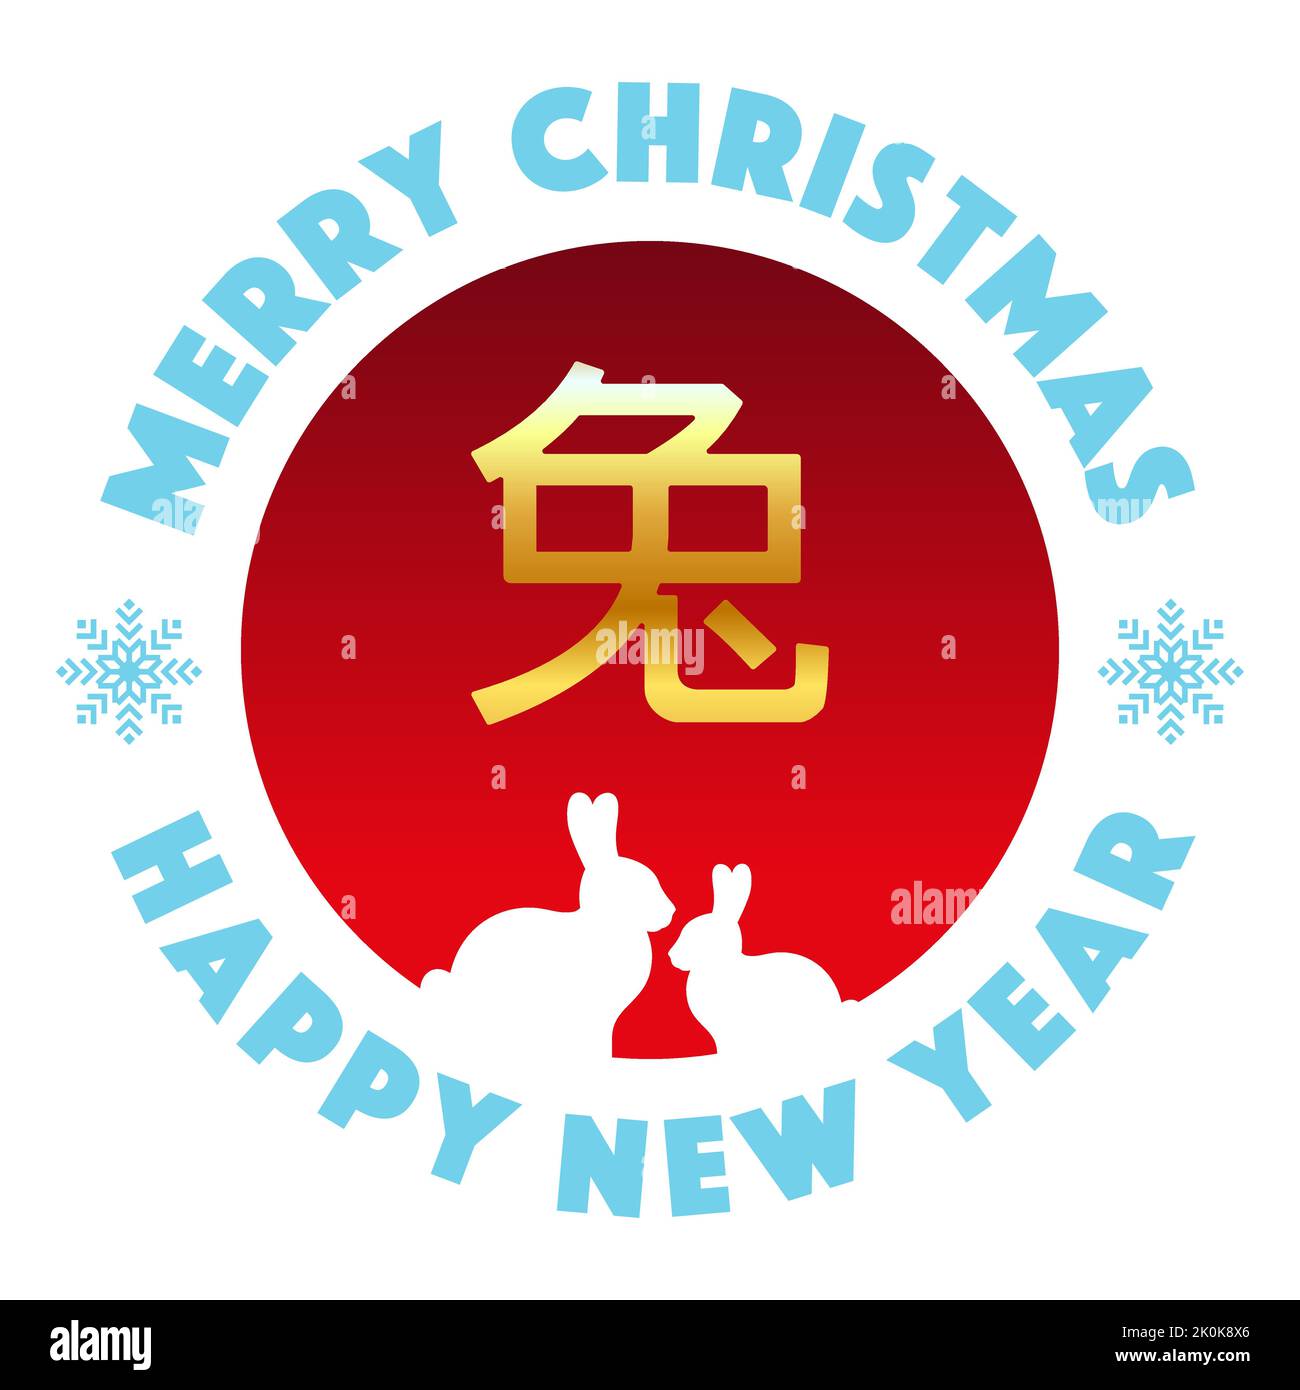 Bannière carrée Joyeux Noël et nouvel an dans le style asiatique. Silhouettes d'un lapin blanc dans un cercle rouge et un caractère chinois, ce qui signifie lapin Illustration de Vecteur